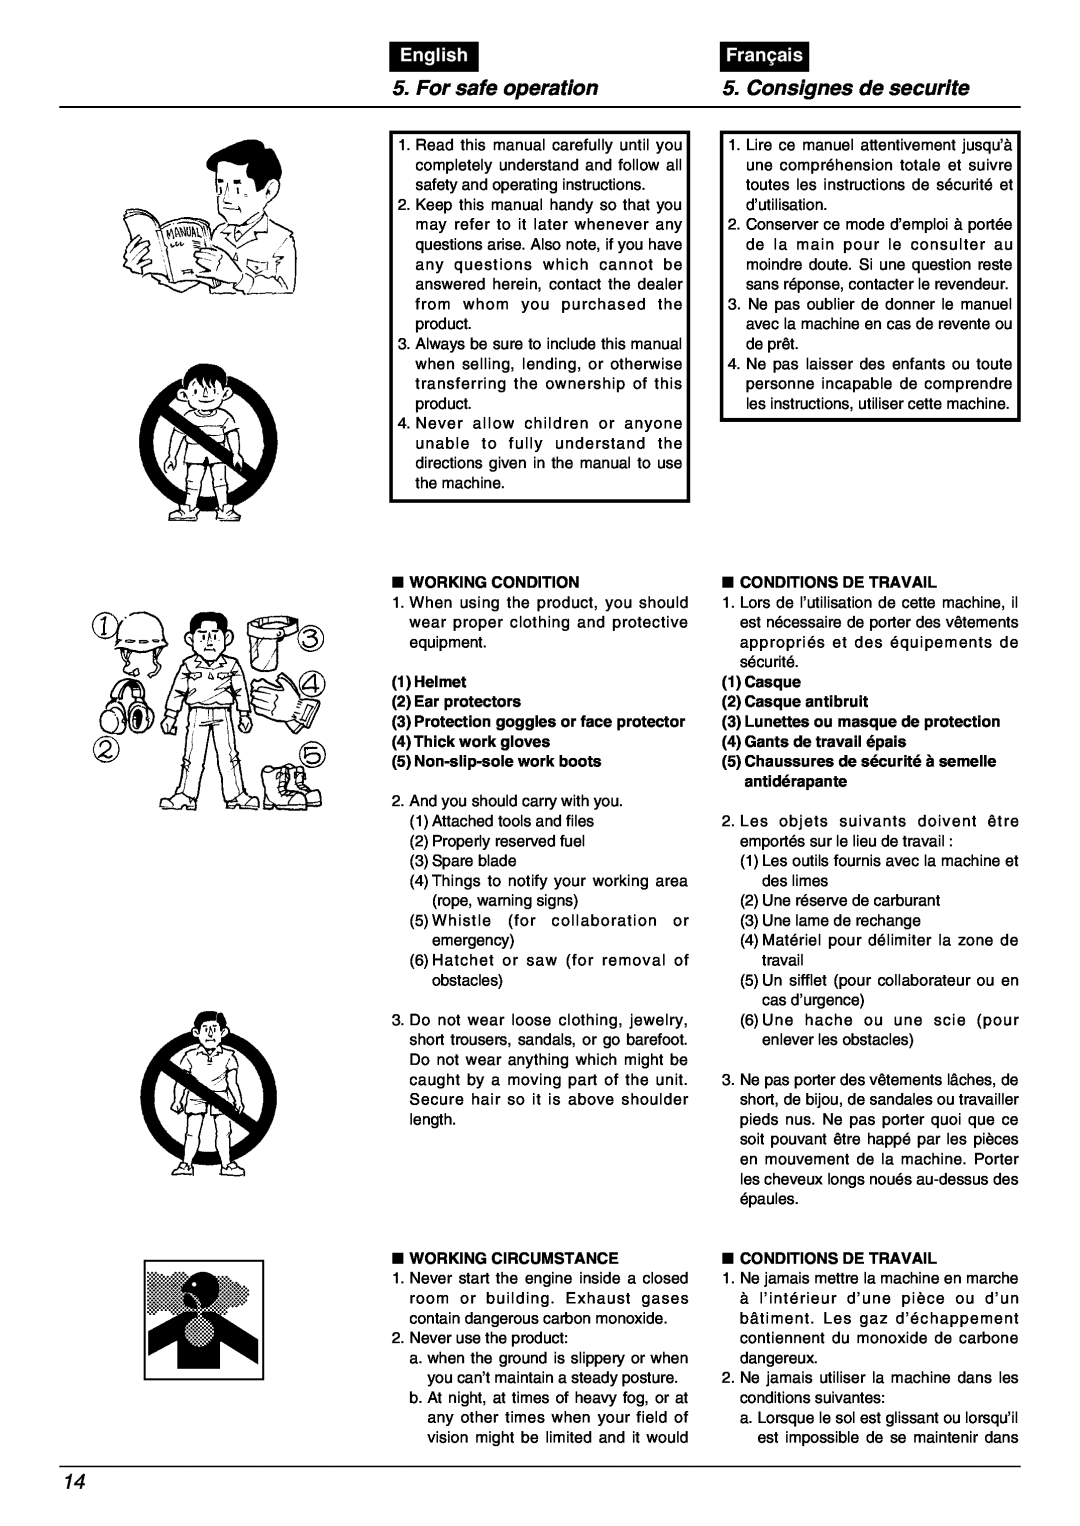 Zenoah BC2000 manual For safe operation, Consignes de securite, English, Français 